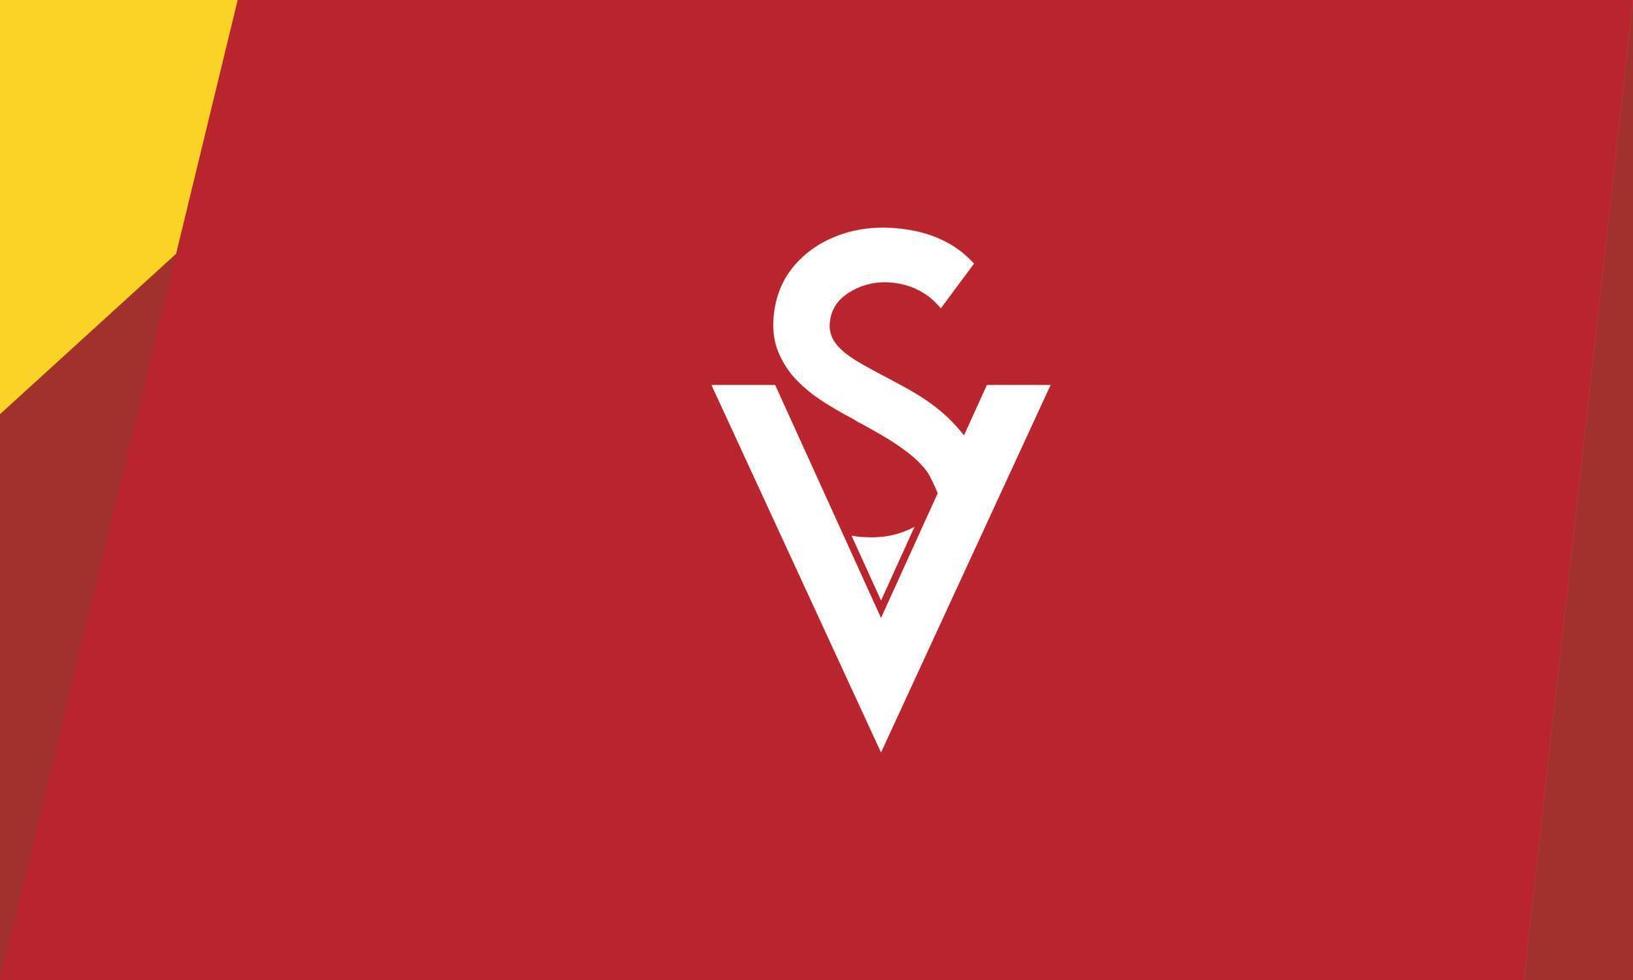 letras do alfabeto iniciais monograma logotipo vs, sv, v e s vetor